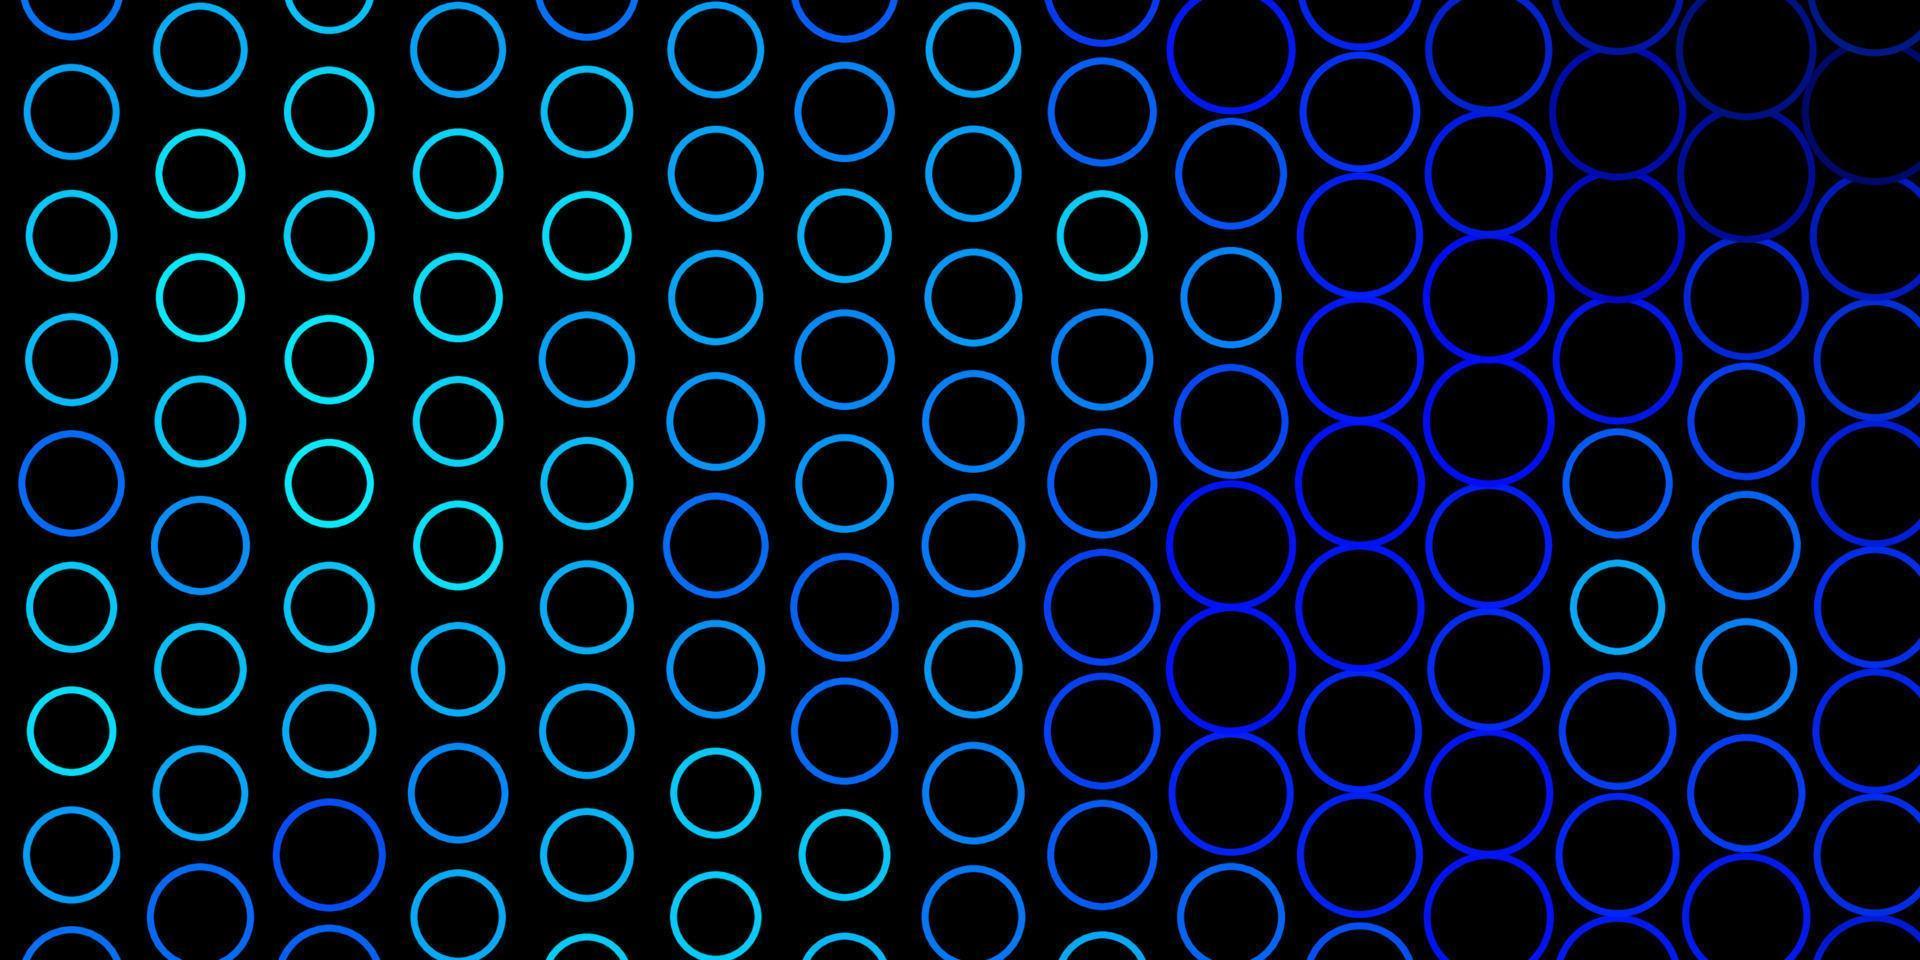 Telón de fondo de vector azul oscuro con círculos.